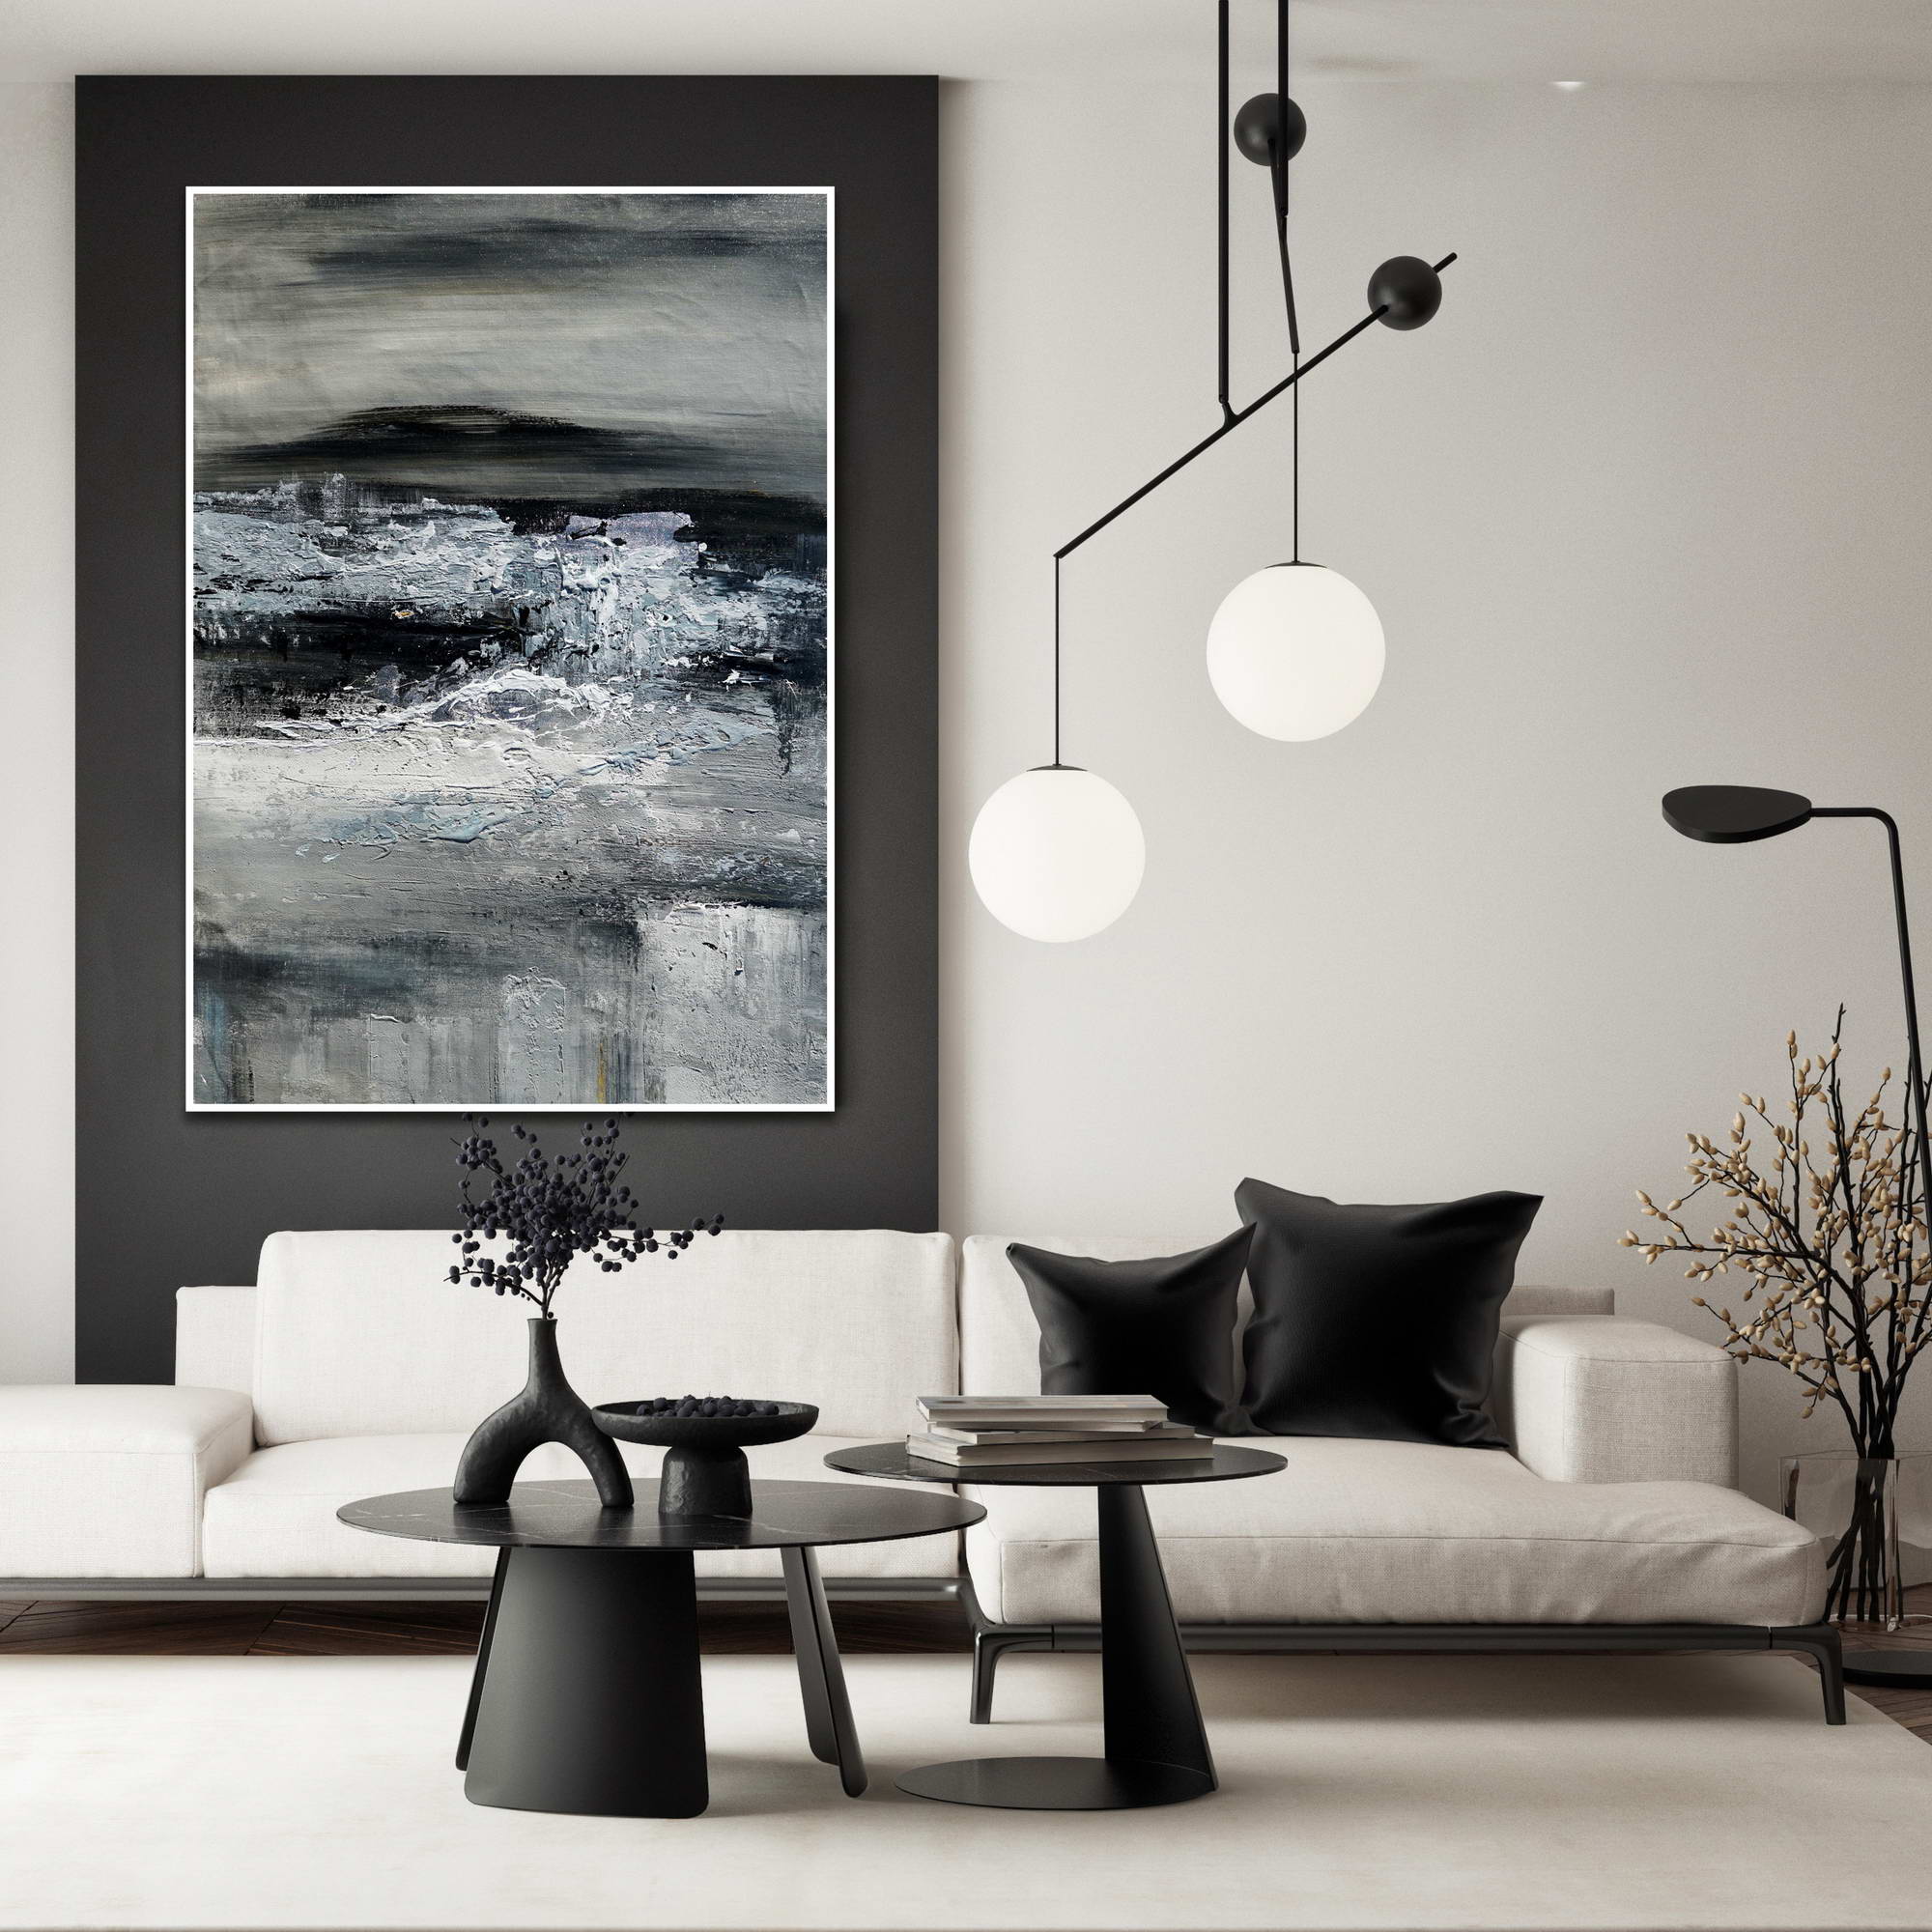 Dipinto astratto in toni di grigio e bianco con elementi che ricordano un paesaggio